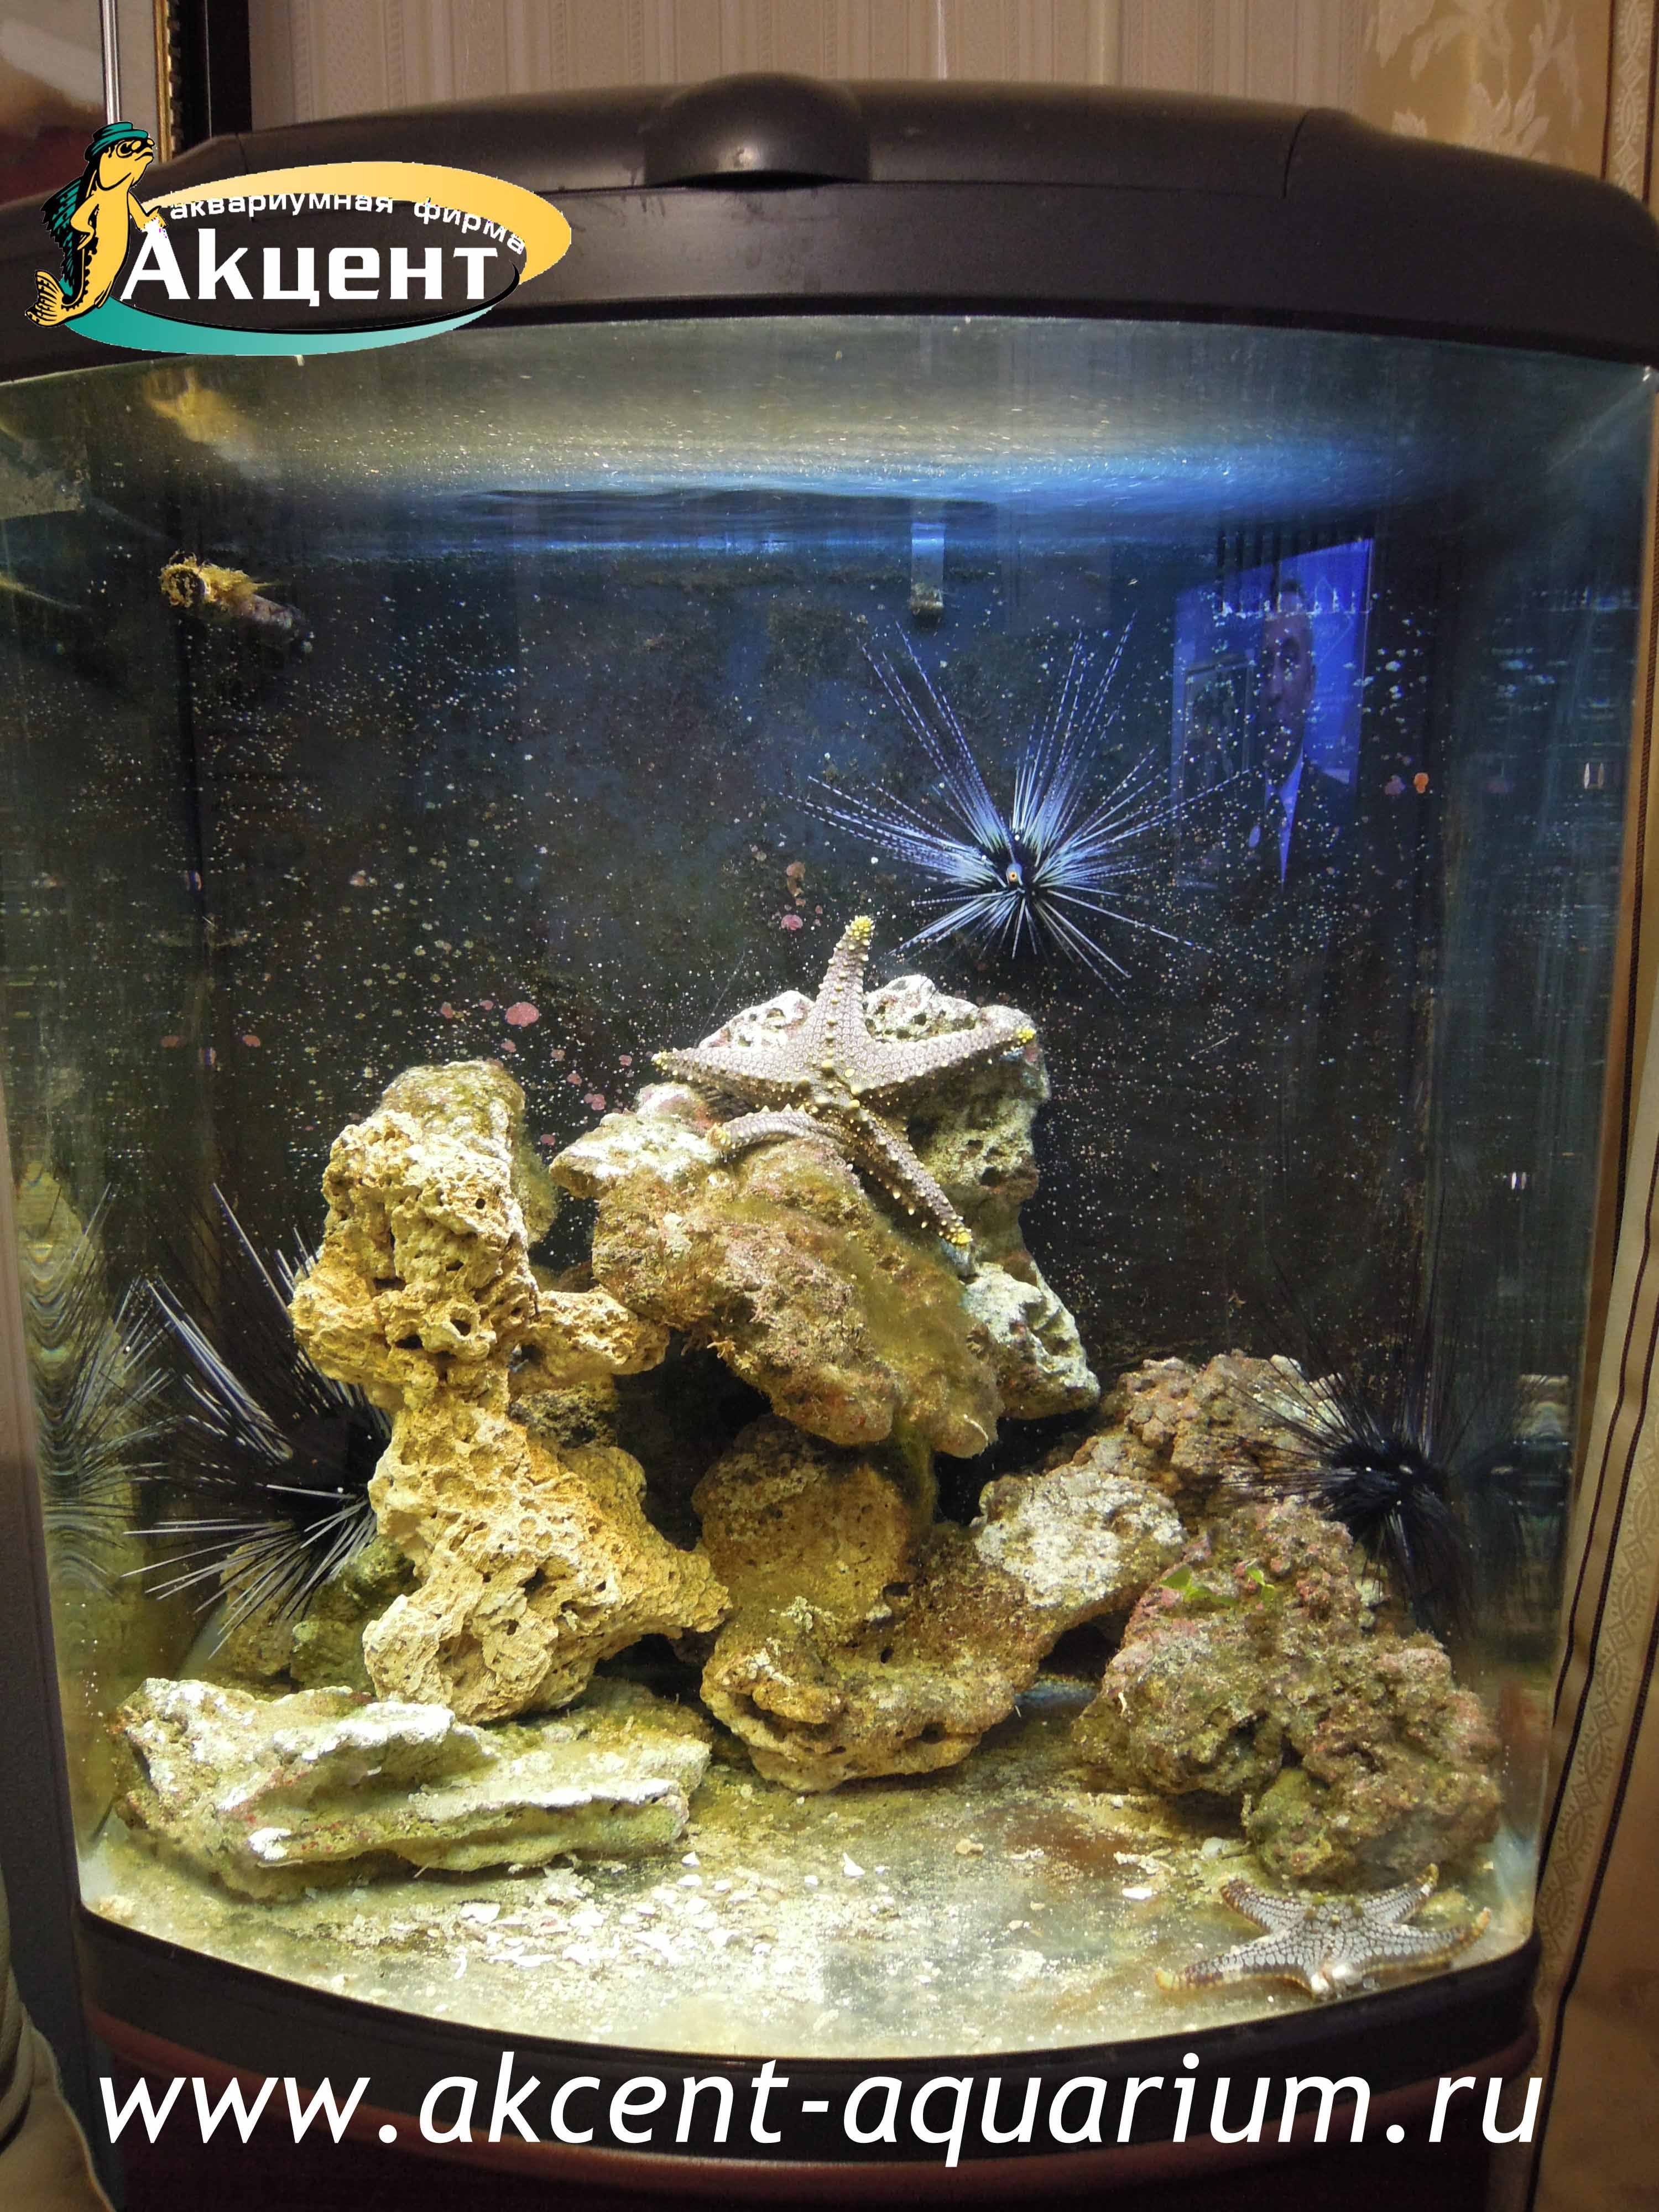 Акцент-аквариум, аквариум 130 литров, море, морские ежи, морские звезды.